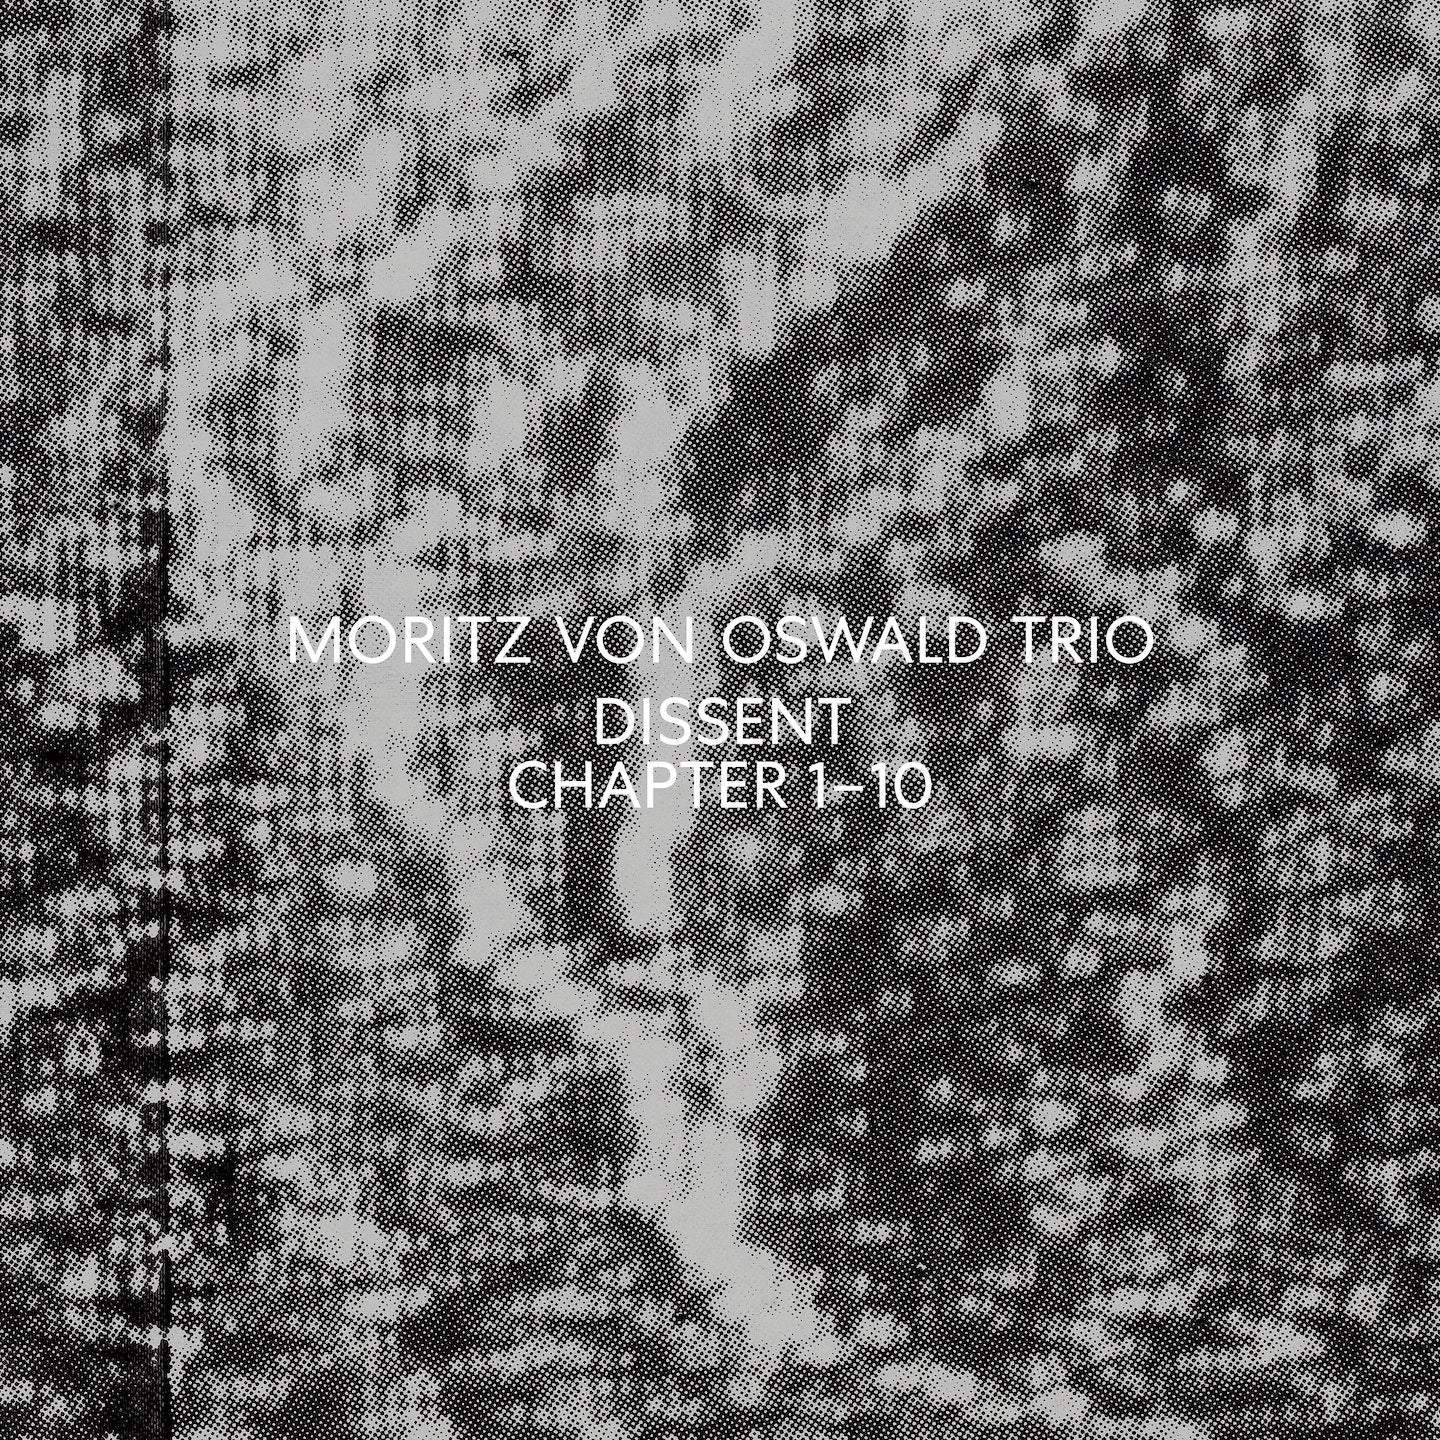 MORITZ VON OSWALD TRIO - Dissent - 2LP - Vinyl